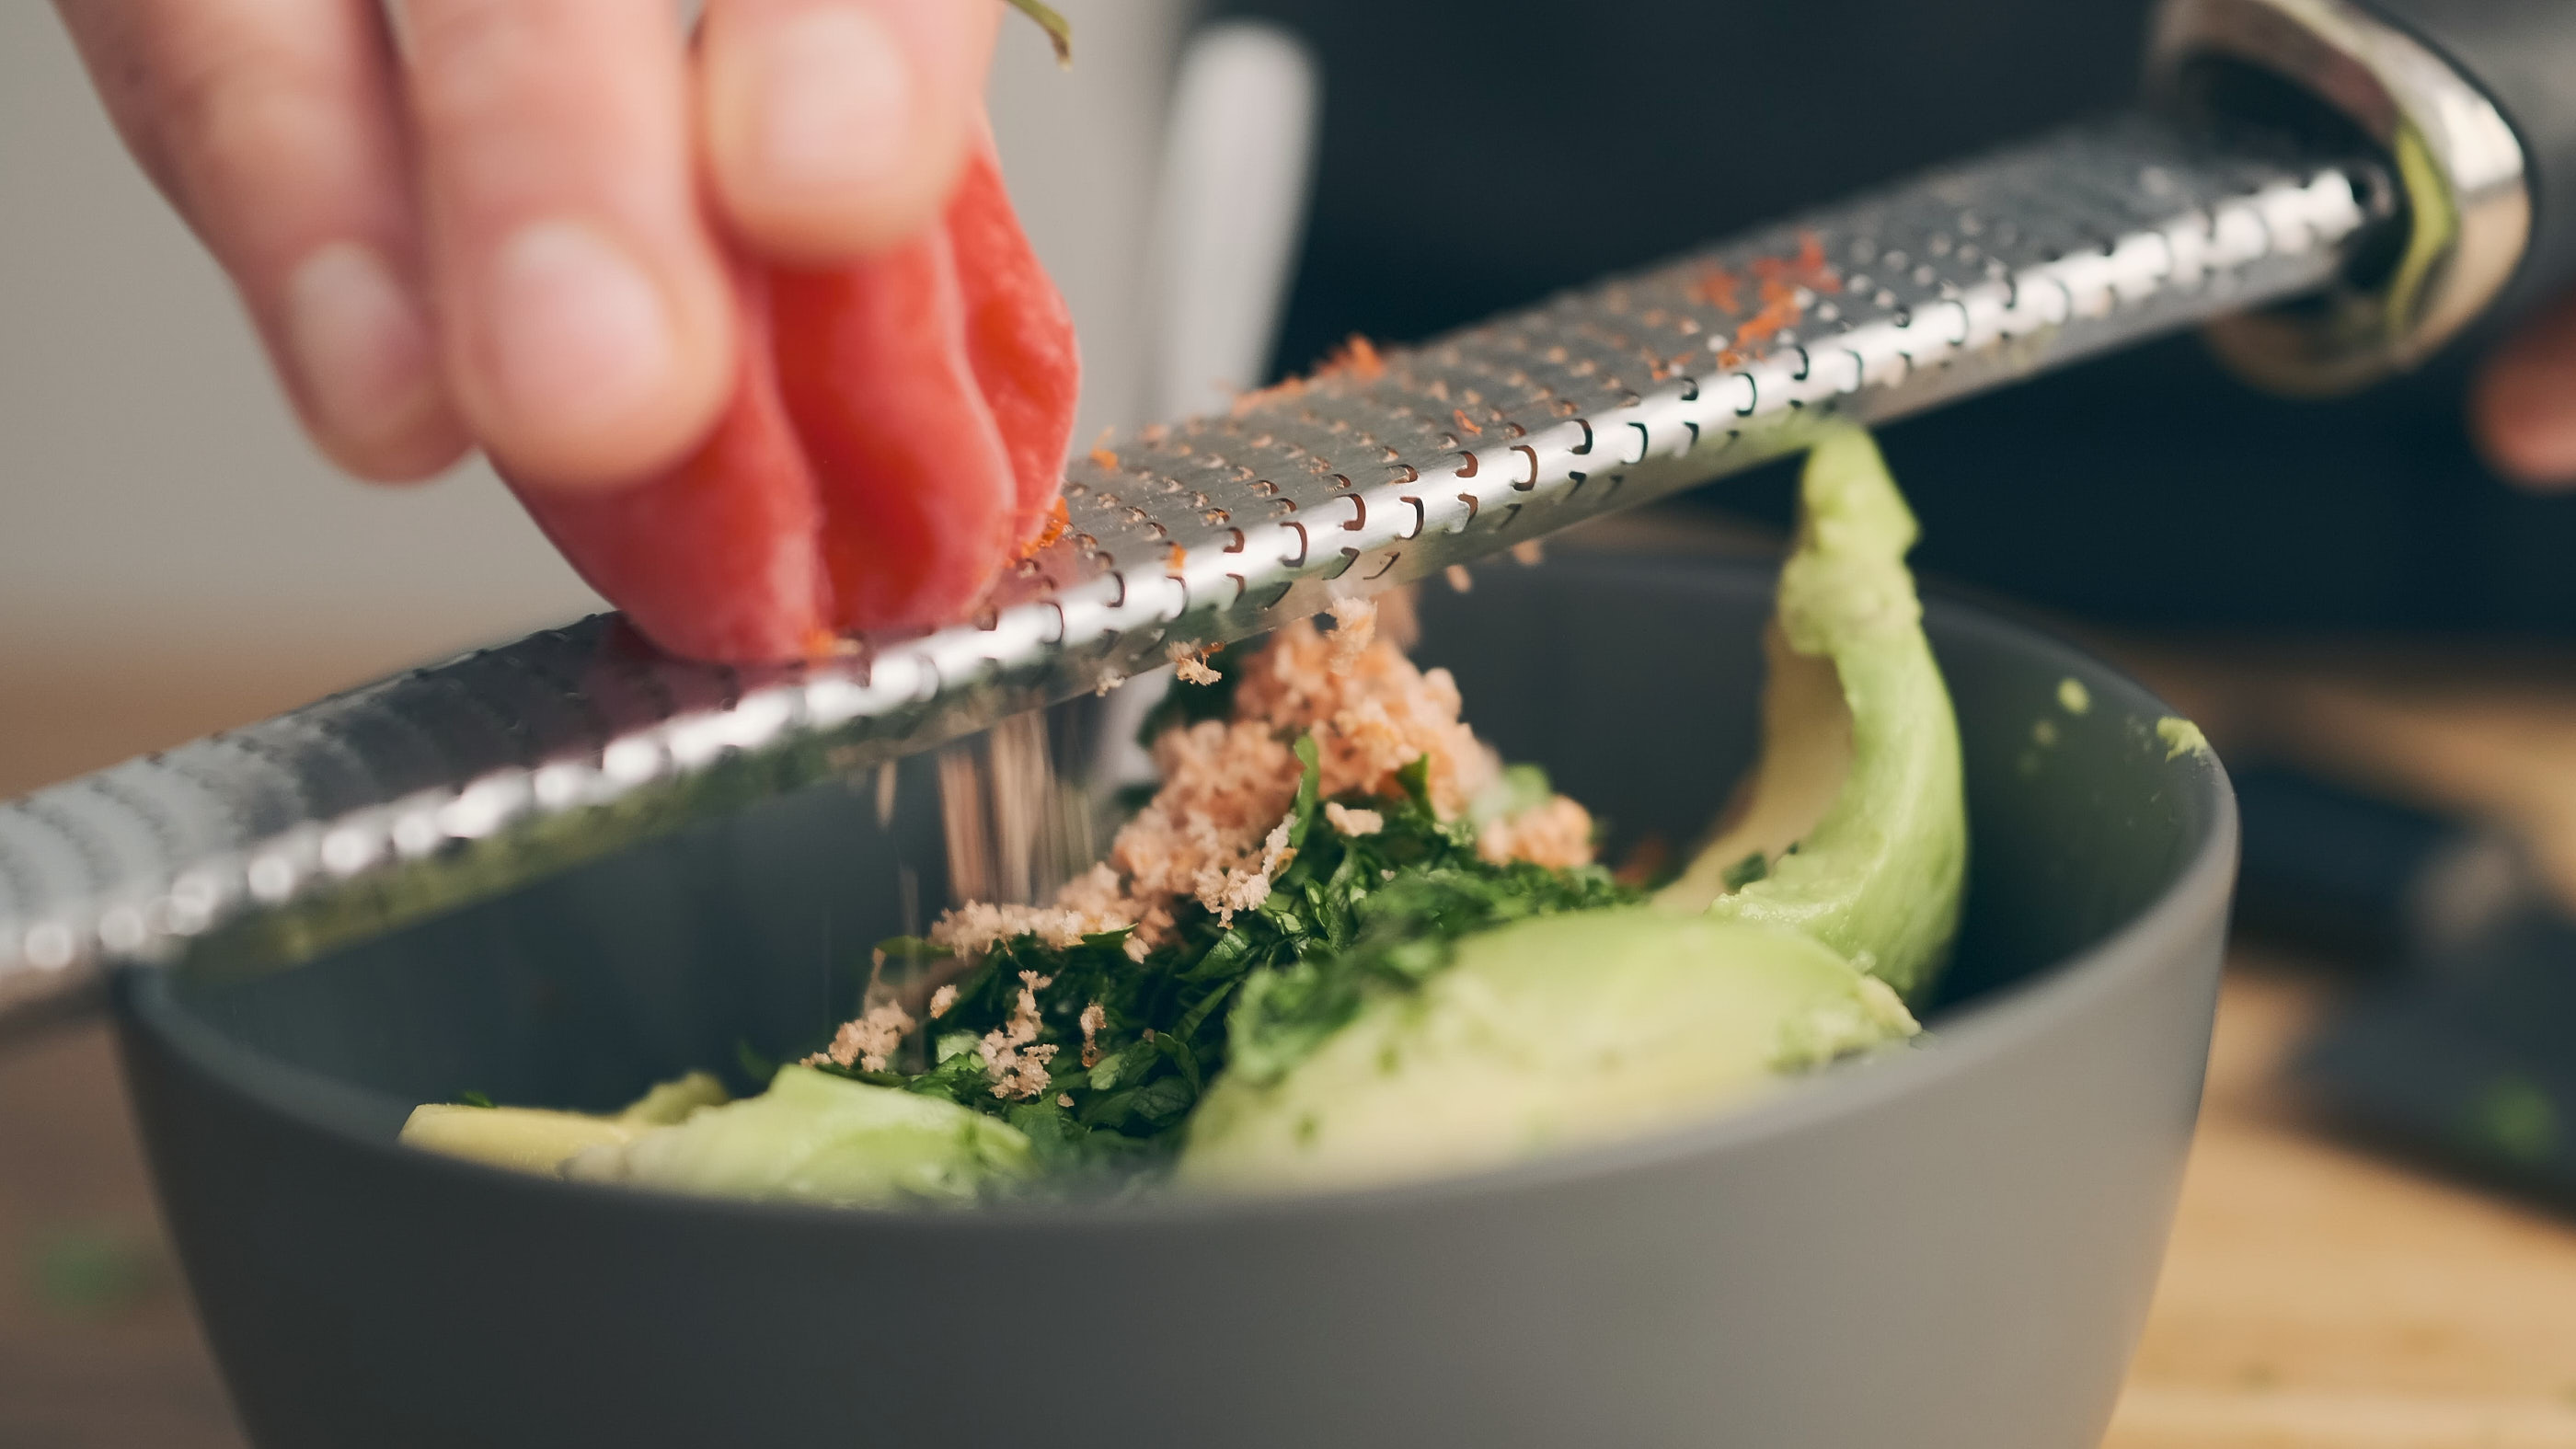 Don’t buy ready-made Guacamole! How to Make a Fresh Homemade Avocado Dip [ASMR]